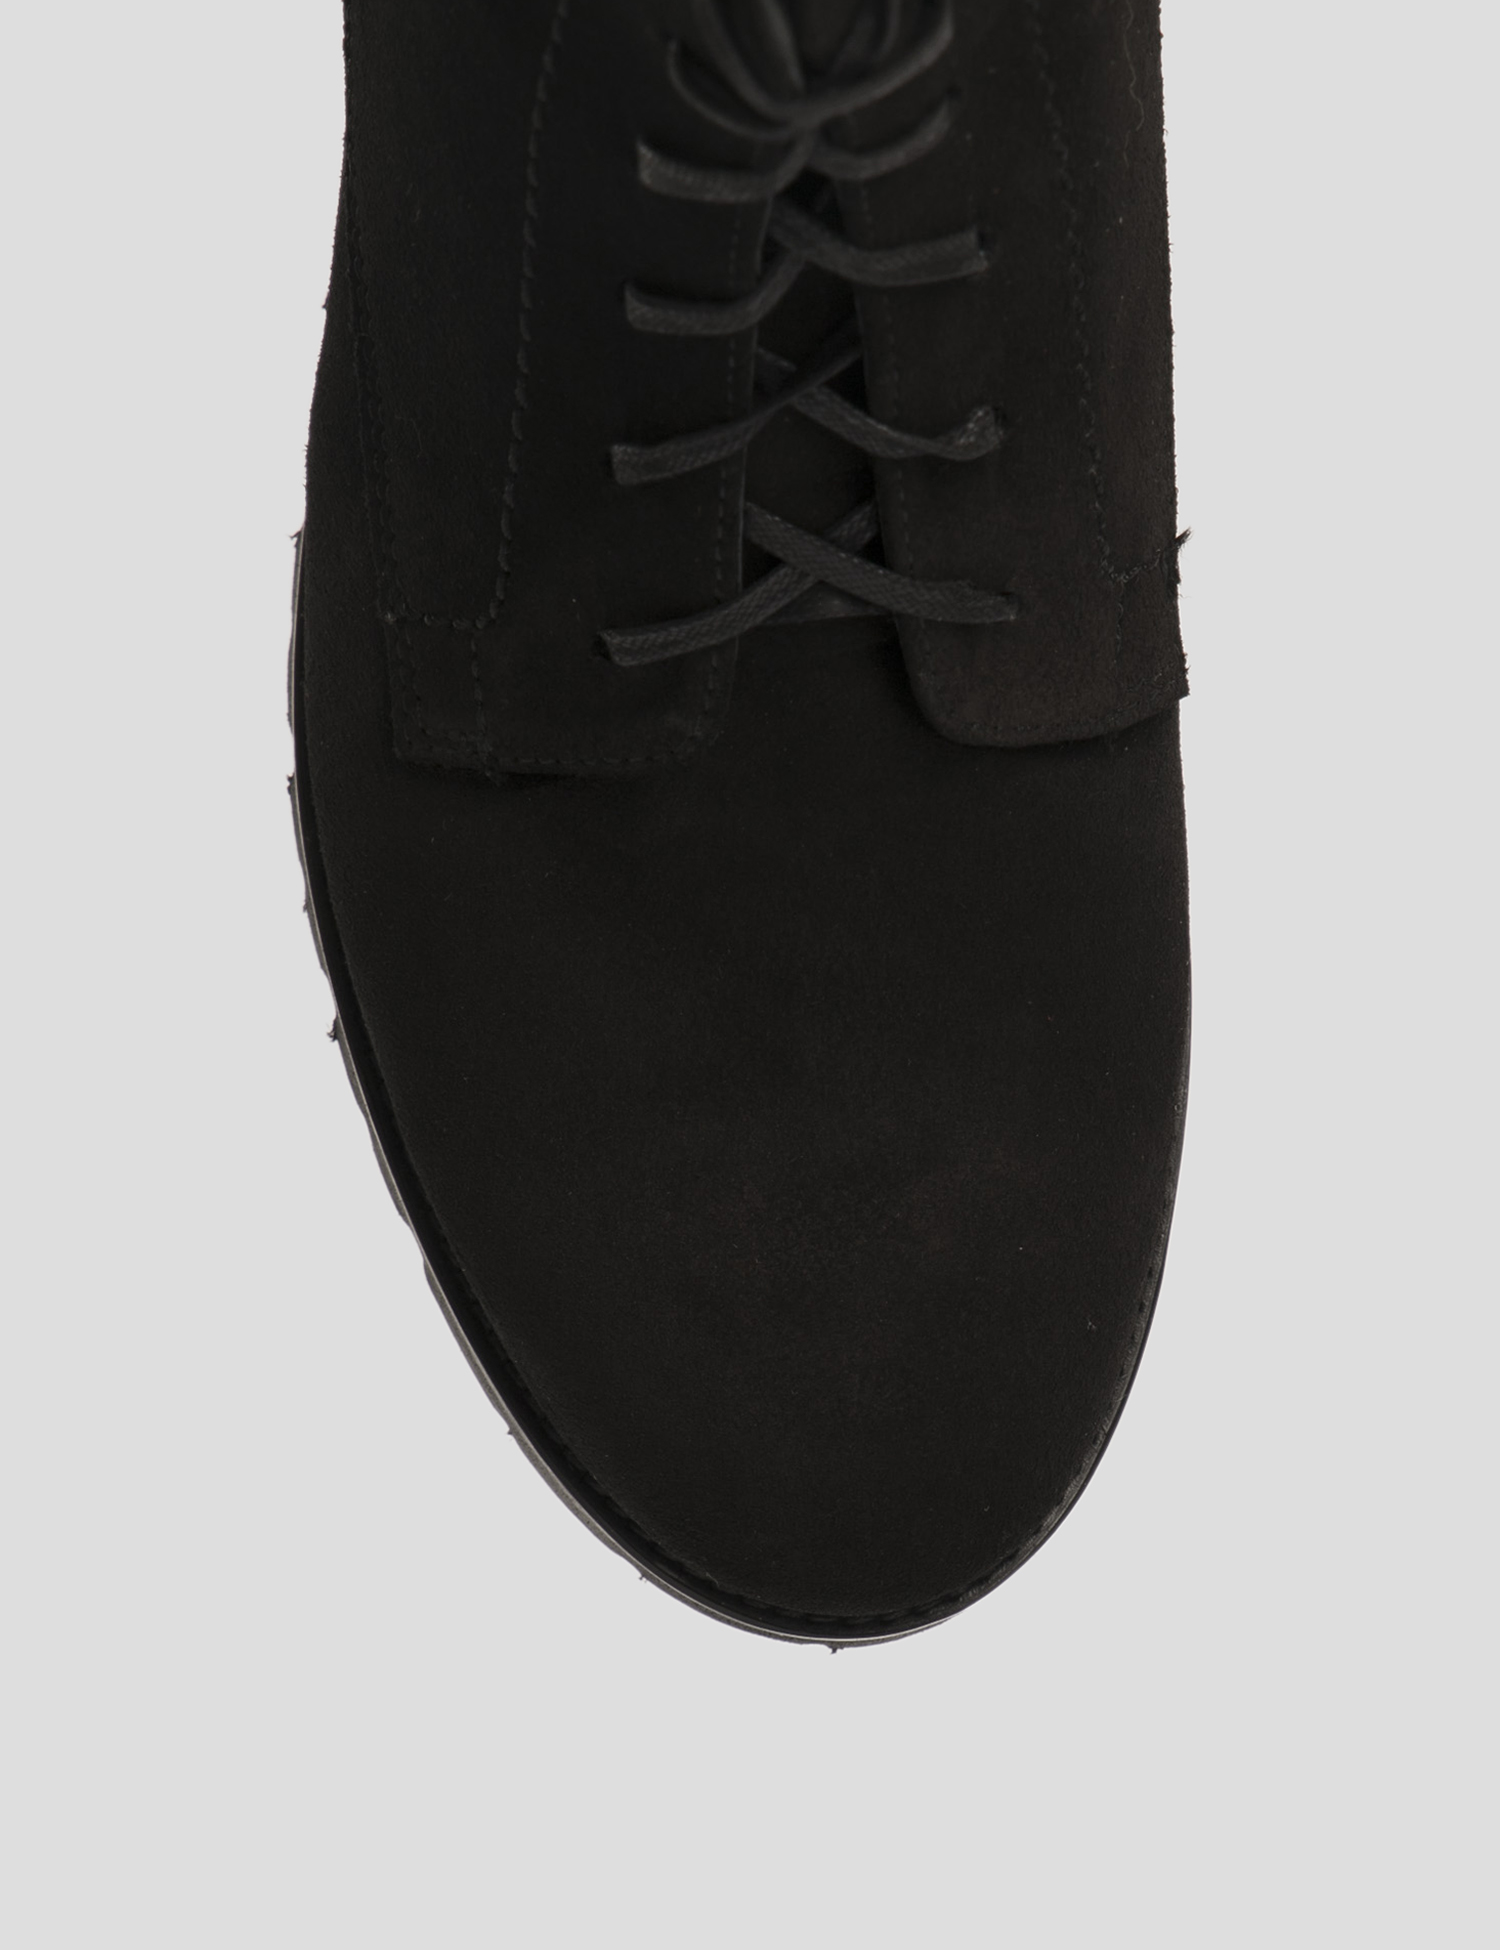 Картинка Жіночі чорні замшеві черевики